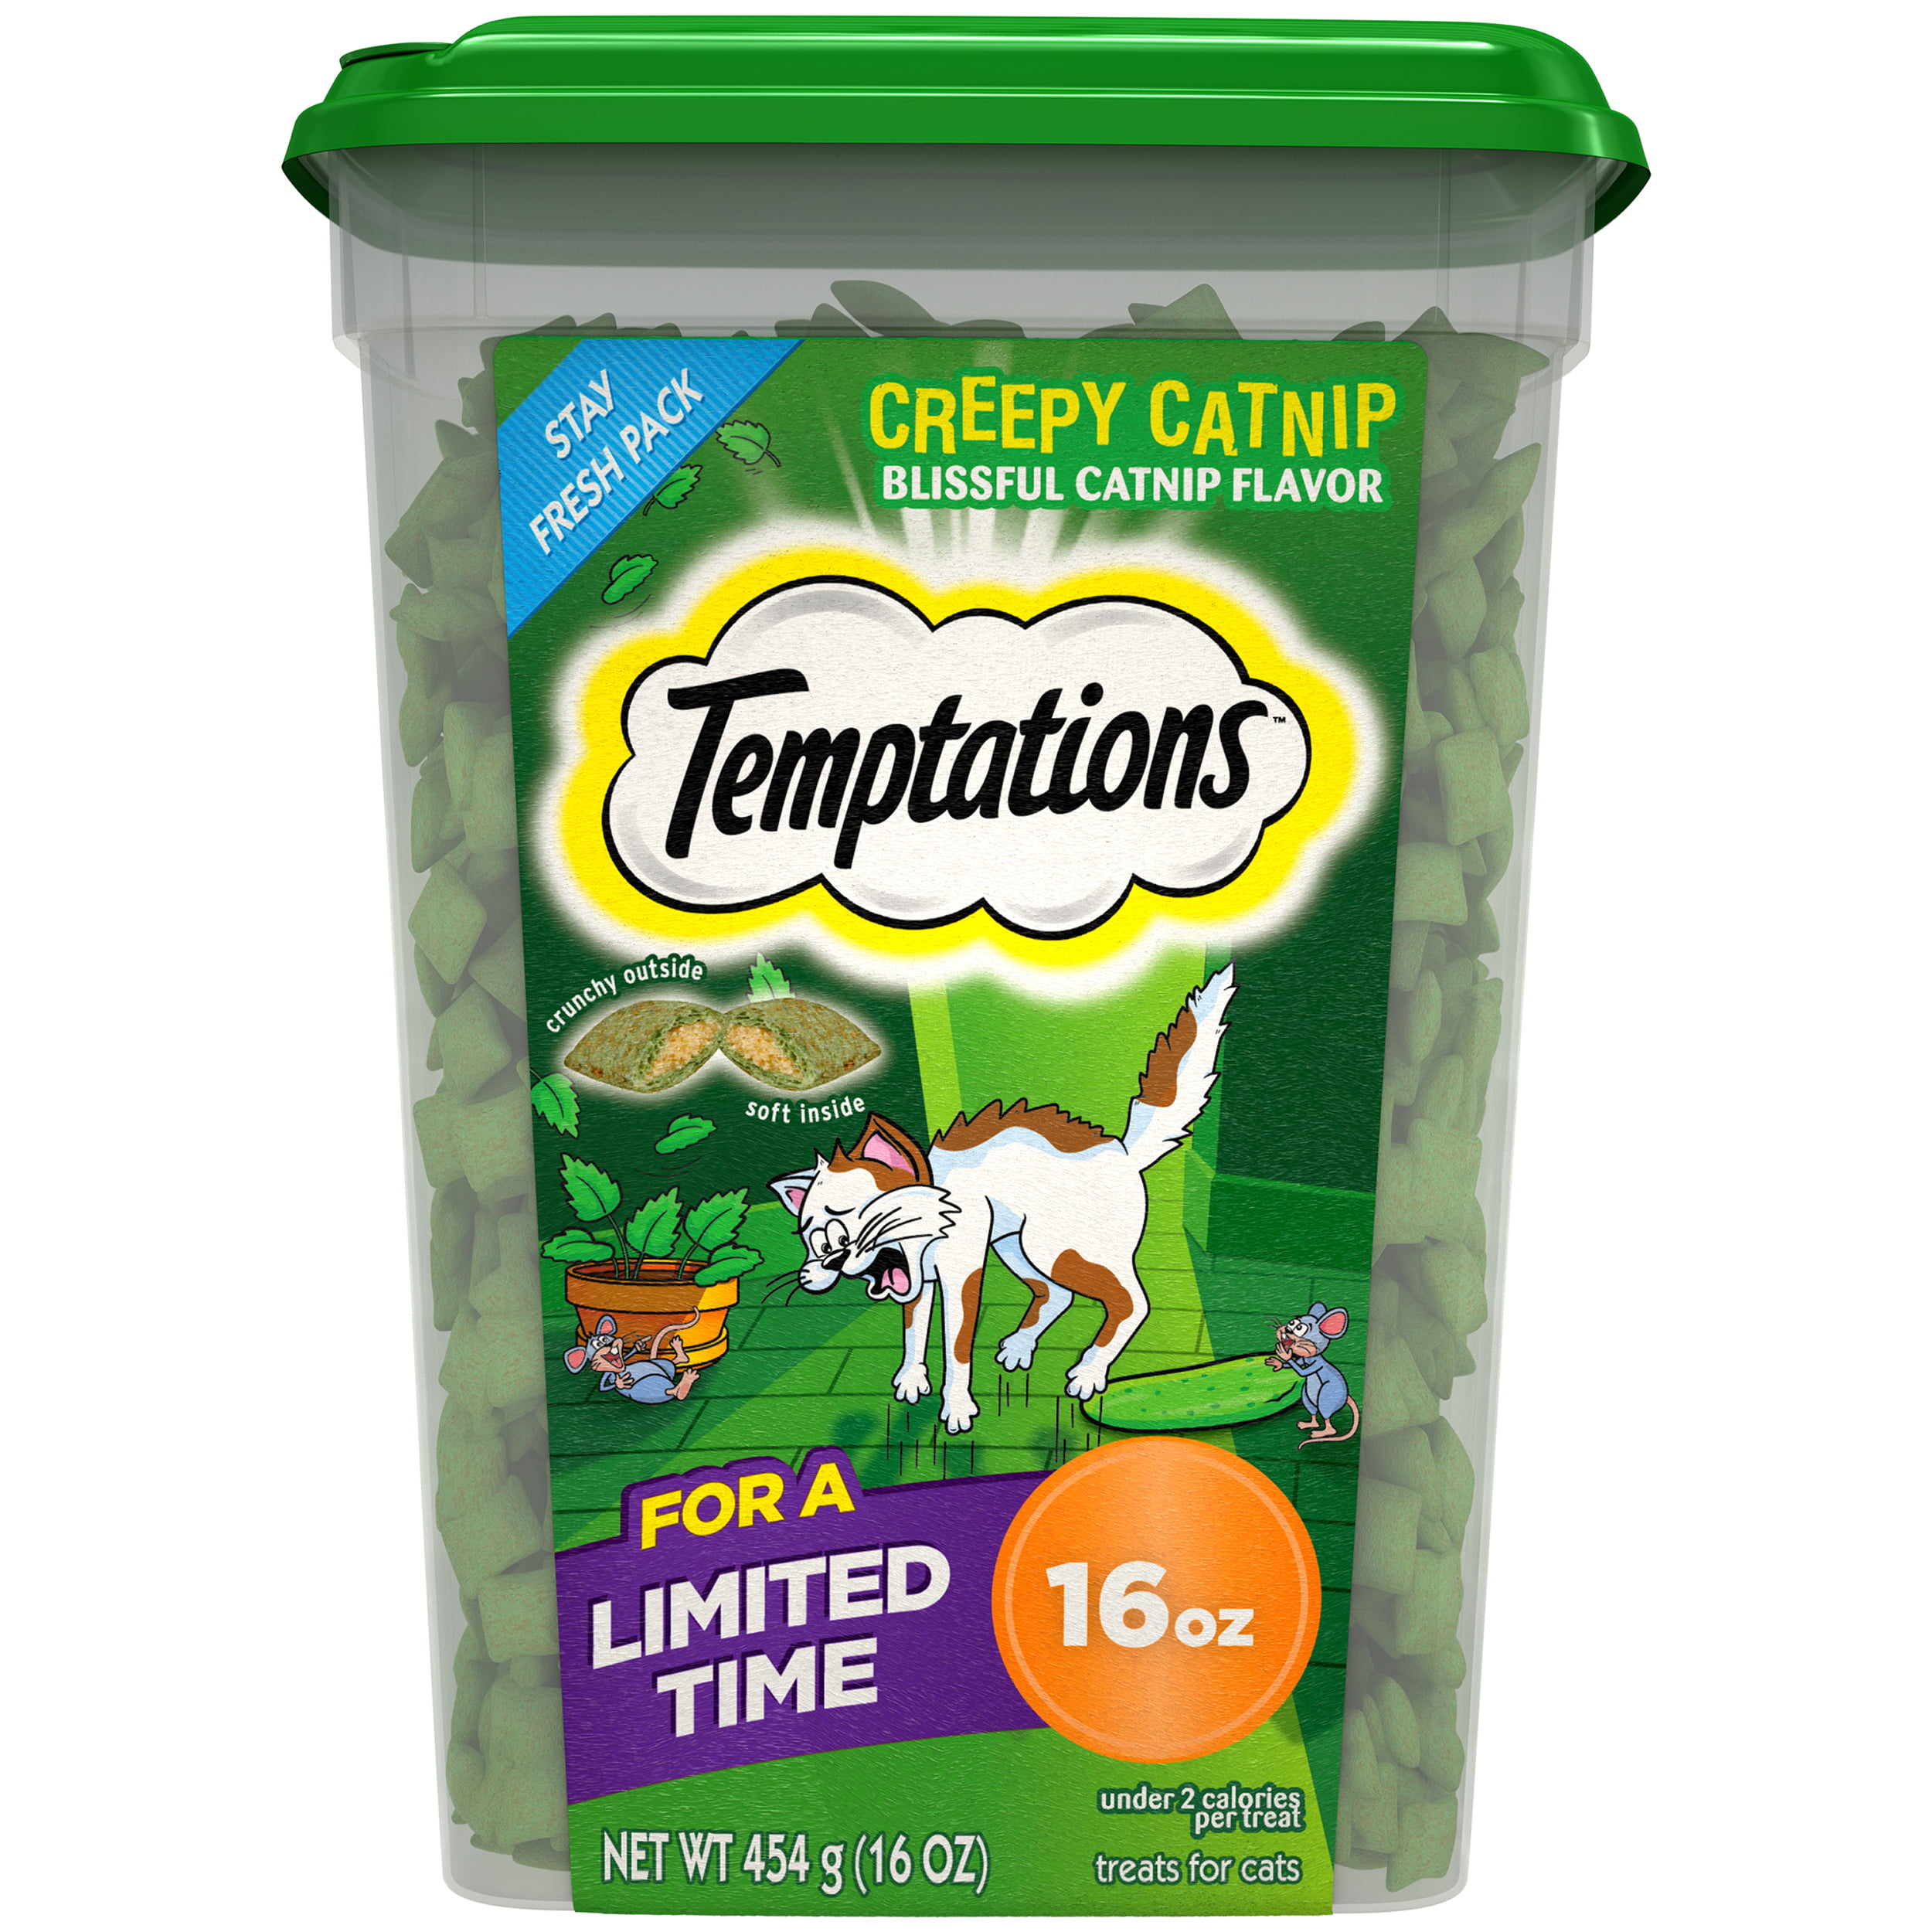 TEMPTATIONS Classic, Crunchy and Soft Cat Treats, Creepy Catnip Treats